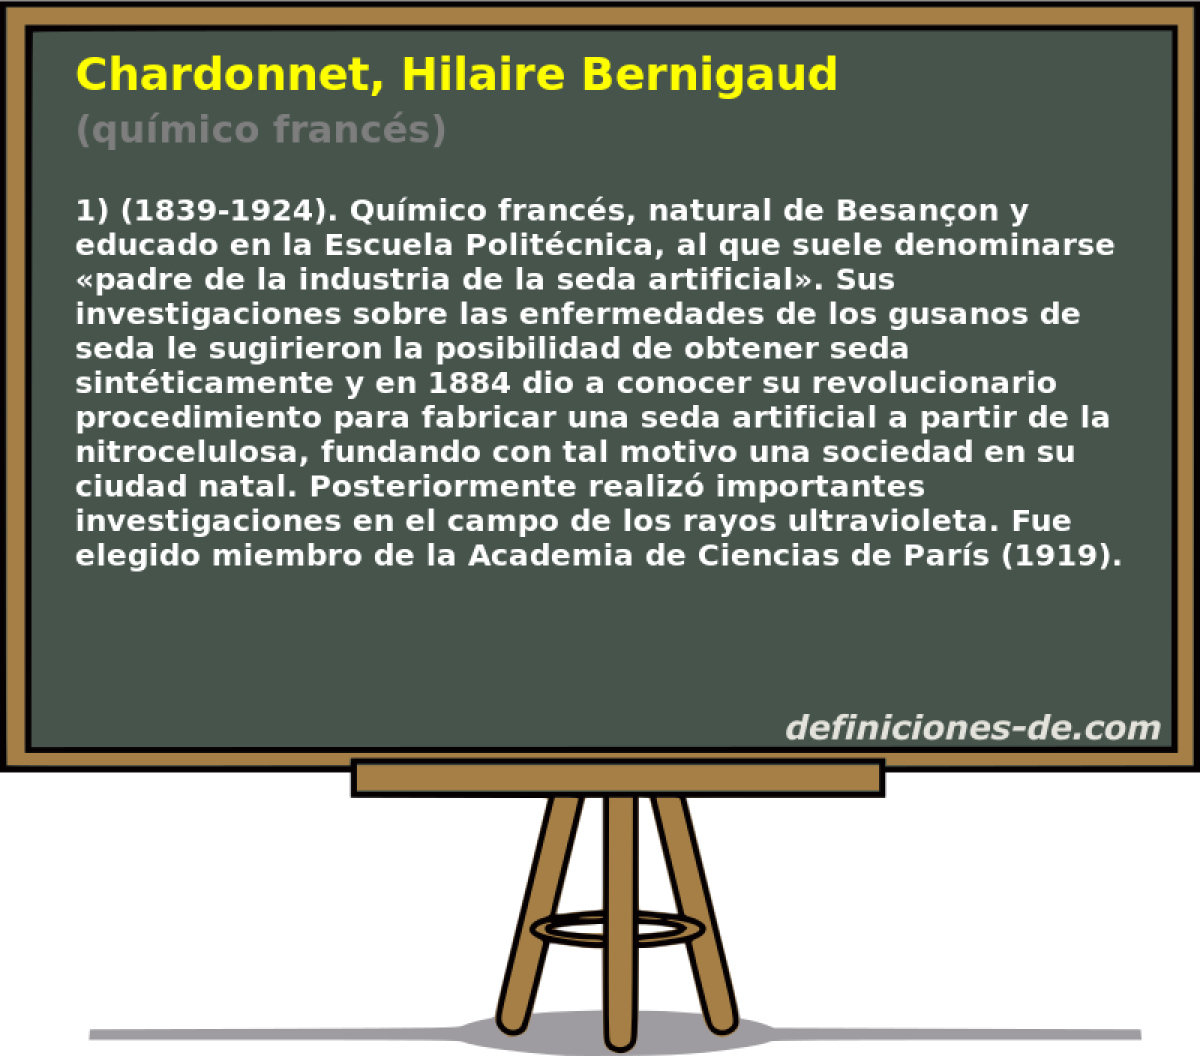 Chardonnet, Hilaire Bernigaud (qumico francs)